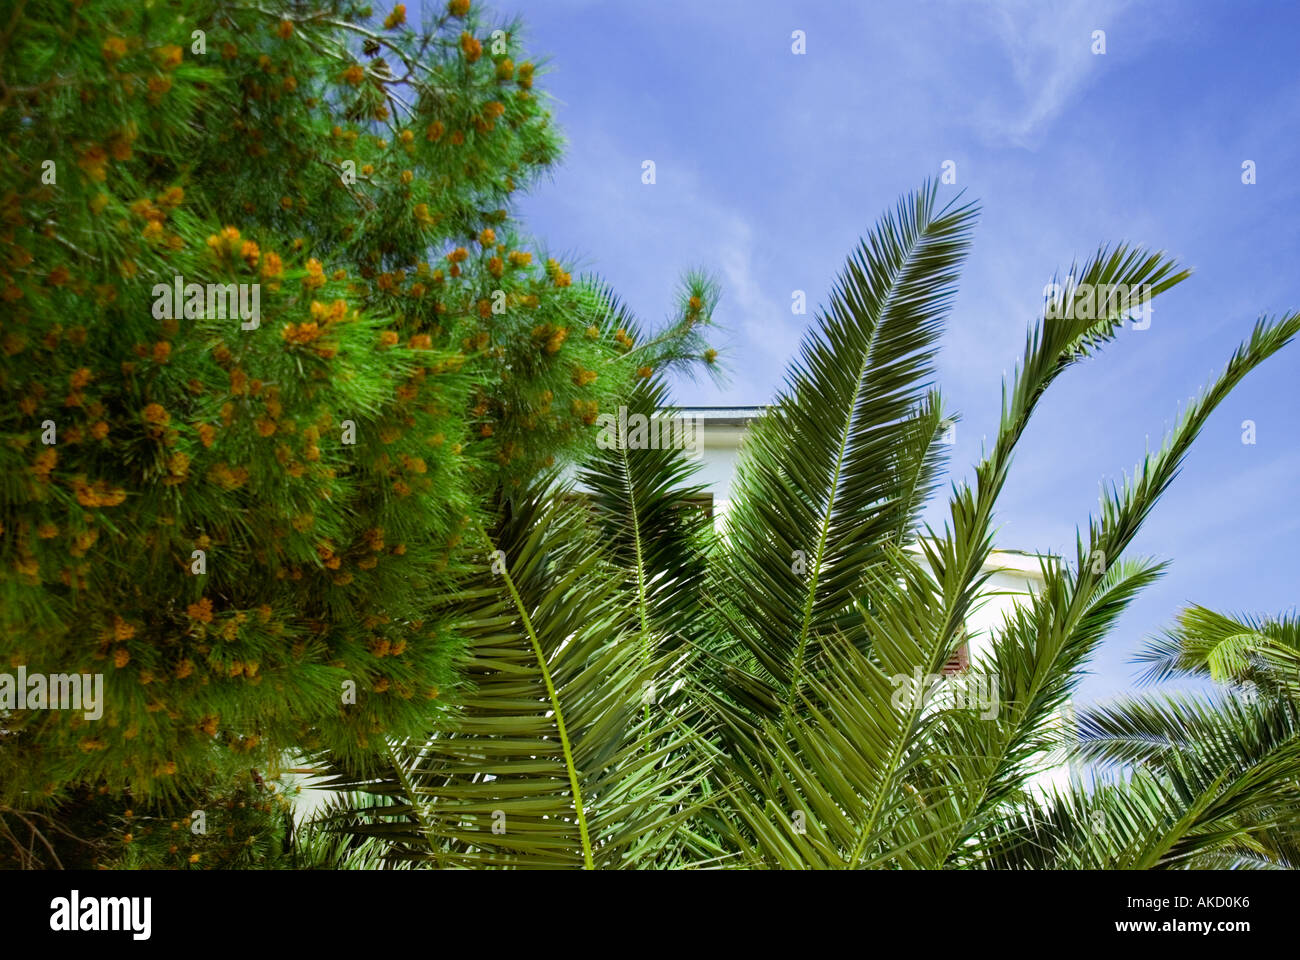 South-East Europe, Croatia, Dalmatia, Sibenik, blue sky with palm trees Stock Photo